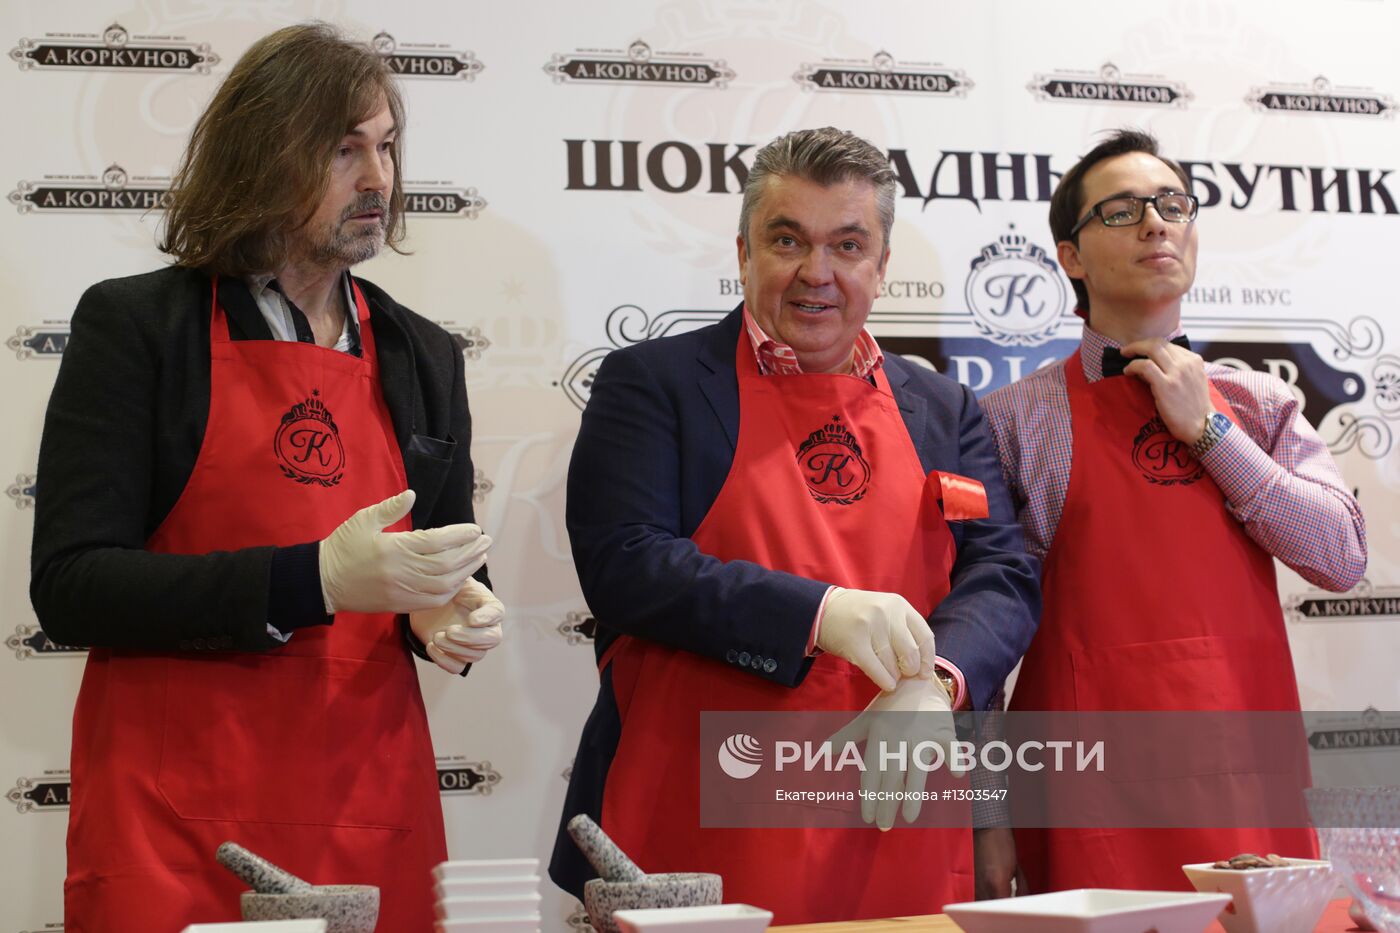 Открытие шоколадного бутика "А. Коркунов" в Москве